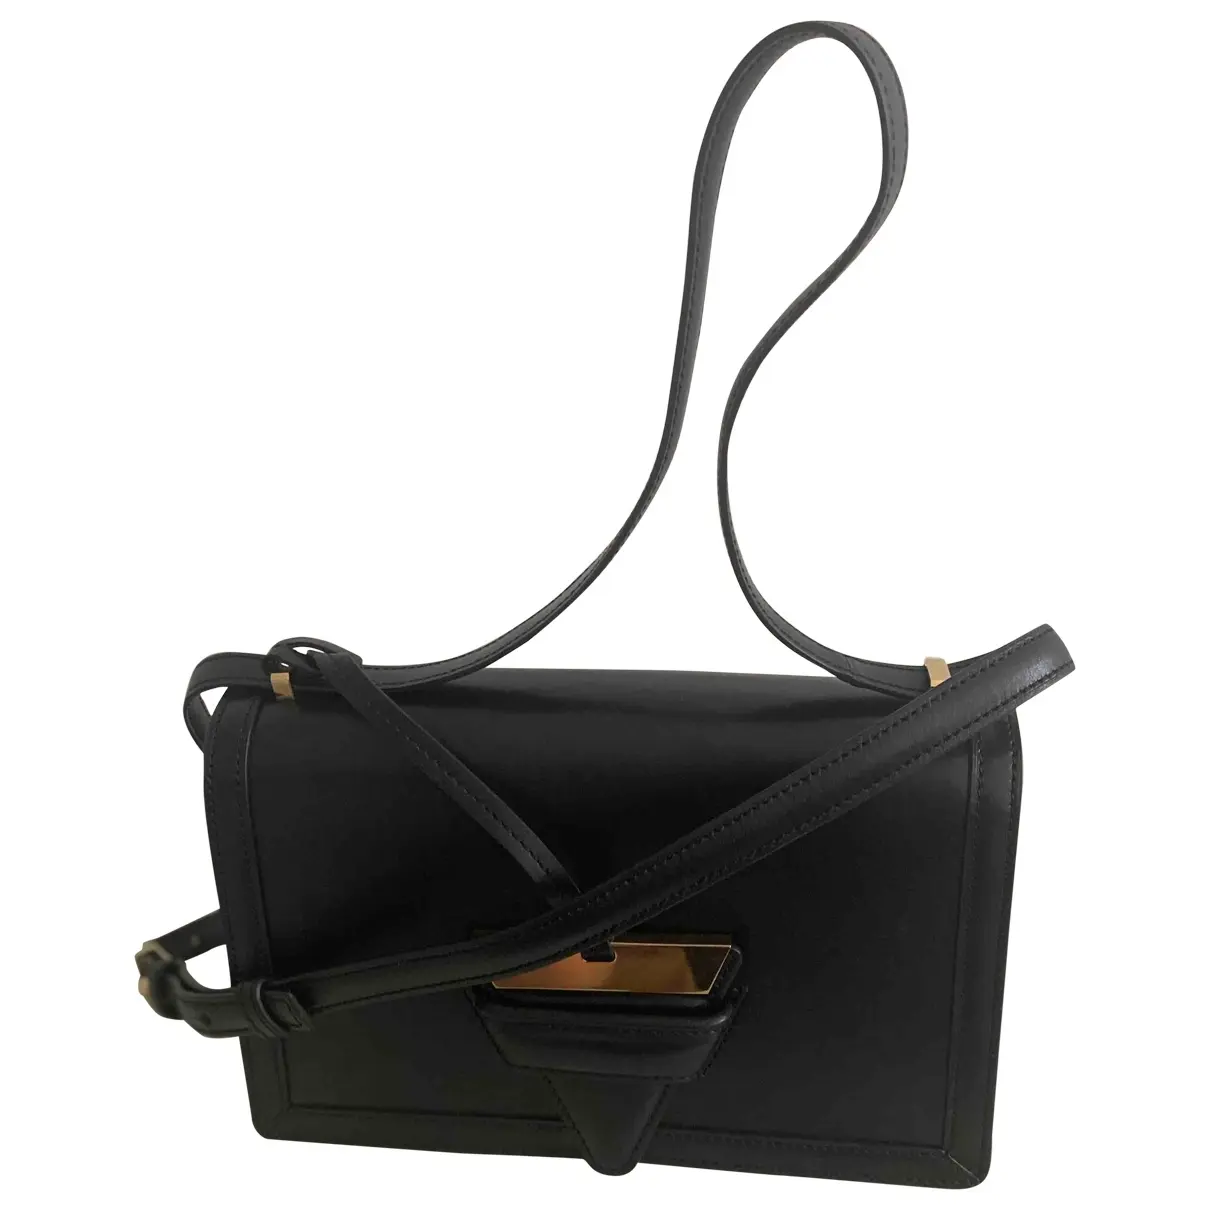 Barcelona leather handbag Loewe